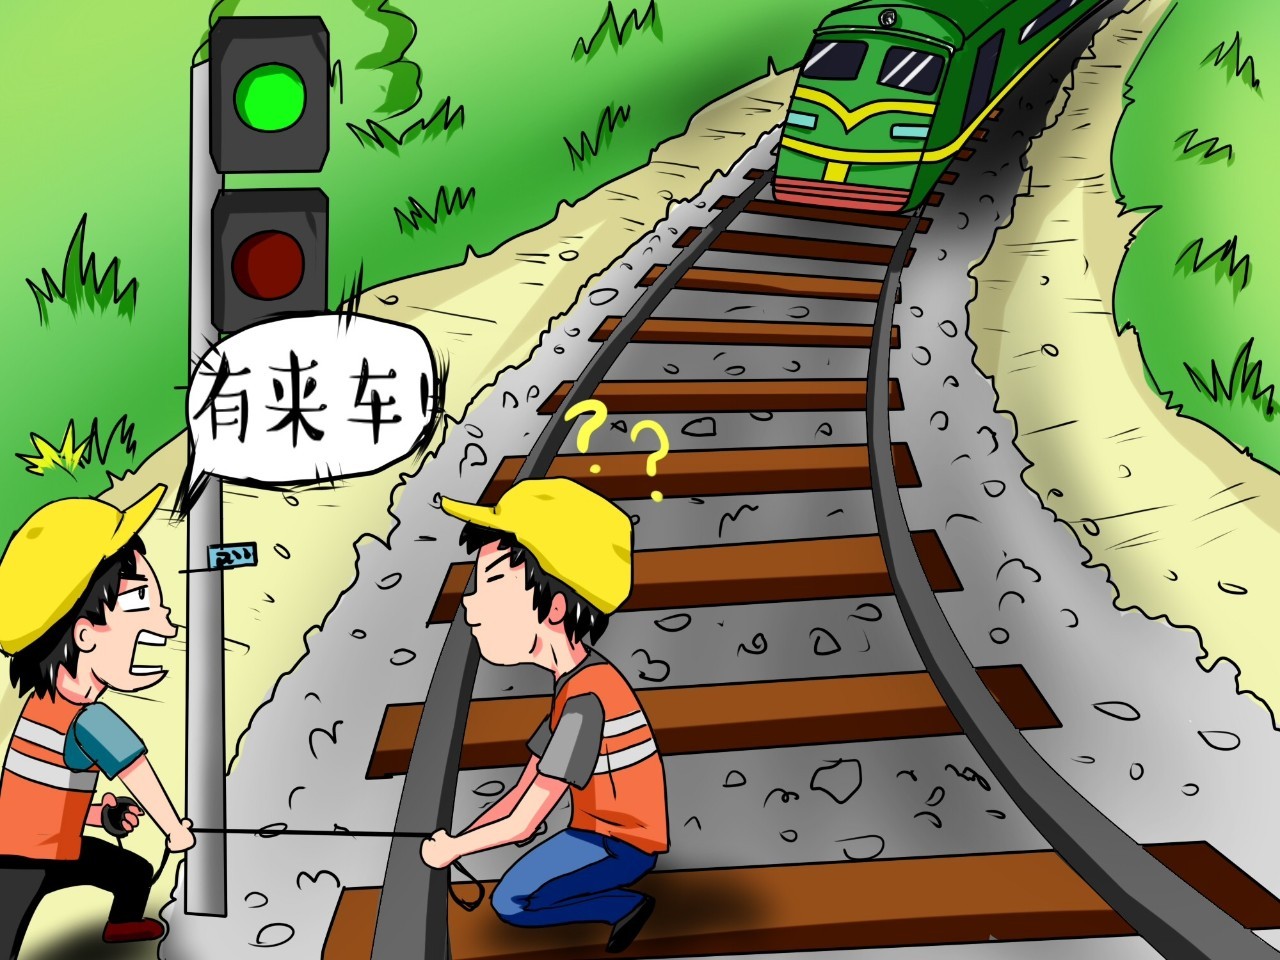 强基达标提质增效q萌漫画教你过铁路的正确打开方式